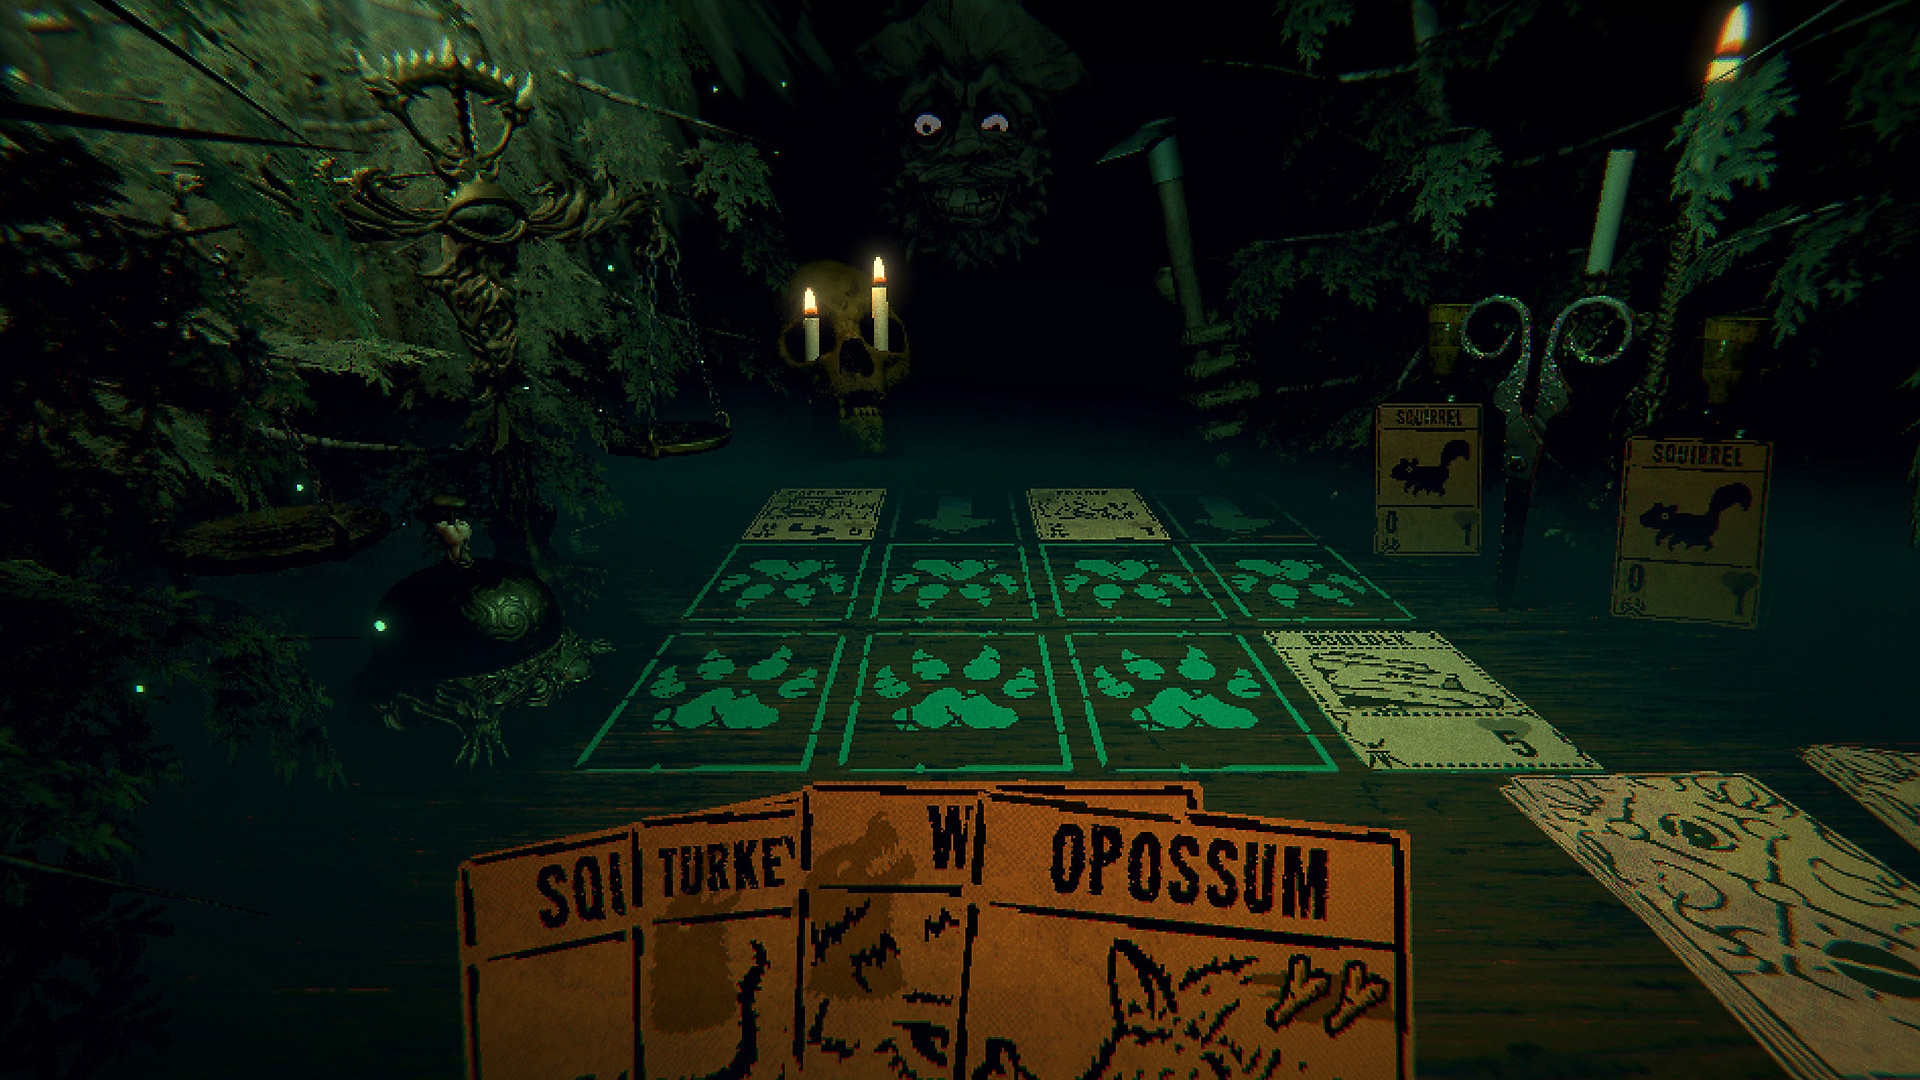 Capture d'écran de gameplay d'Inscryption montrant une main de cartes avec une silhouette mystérieuse au loin.